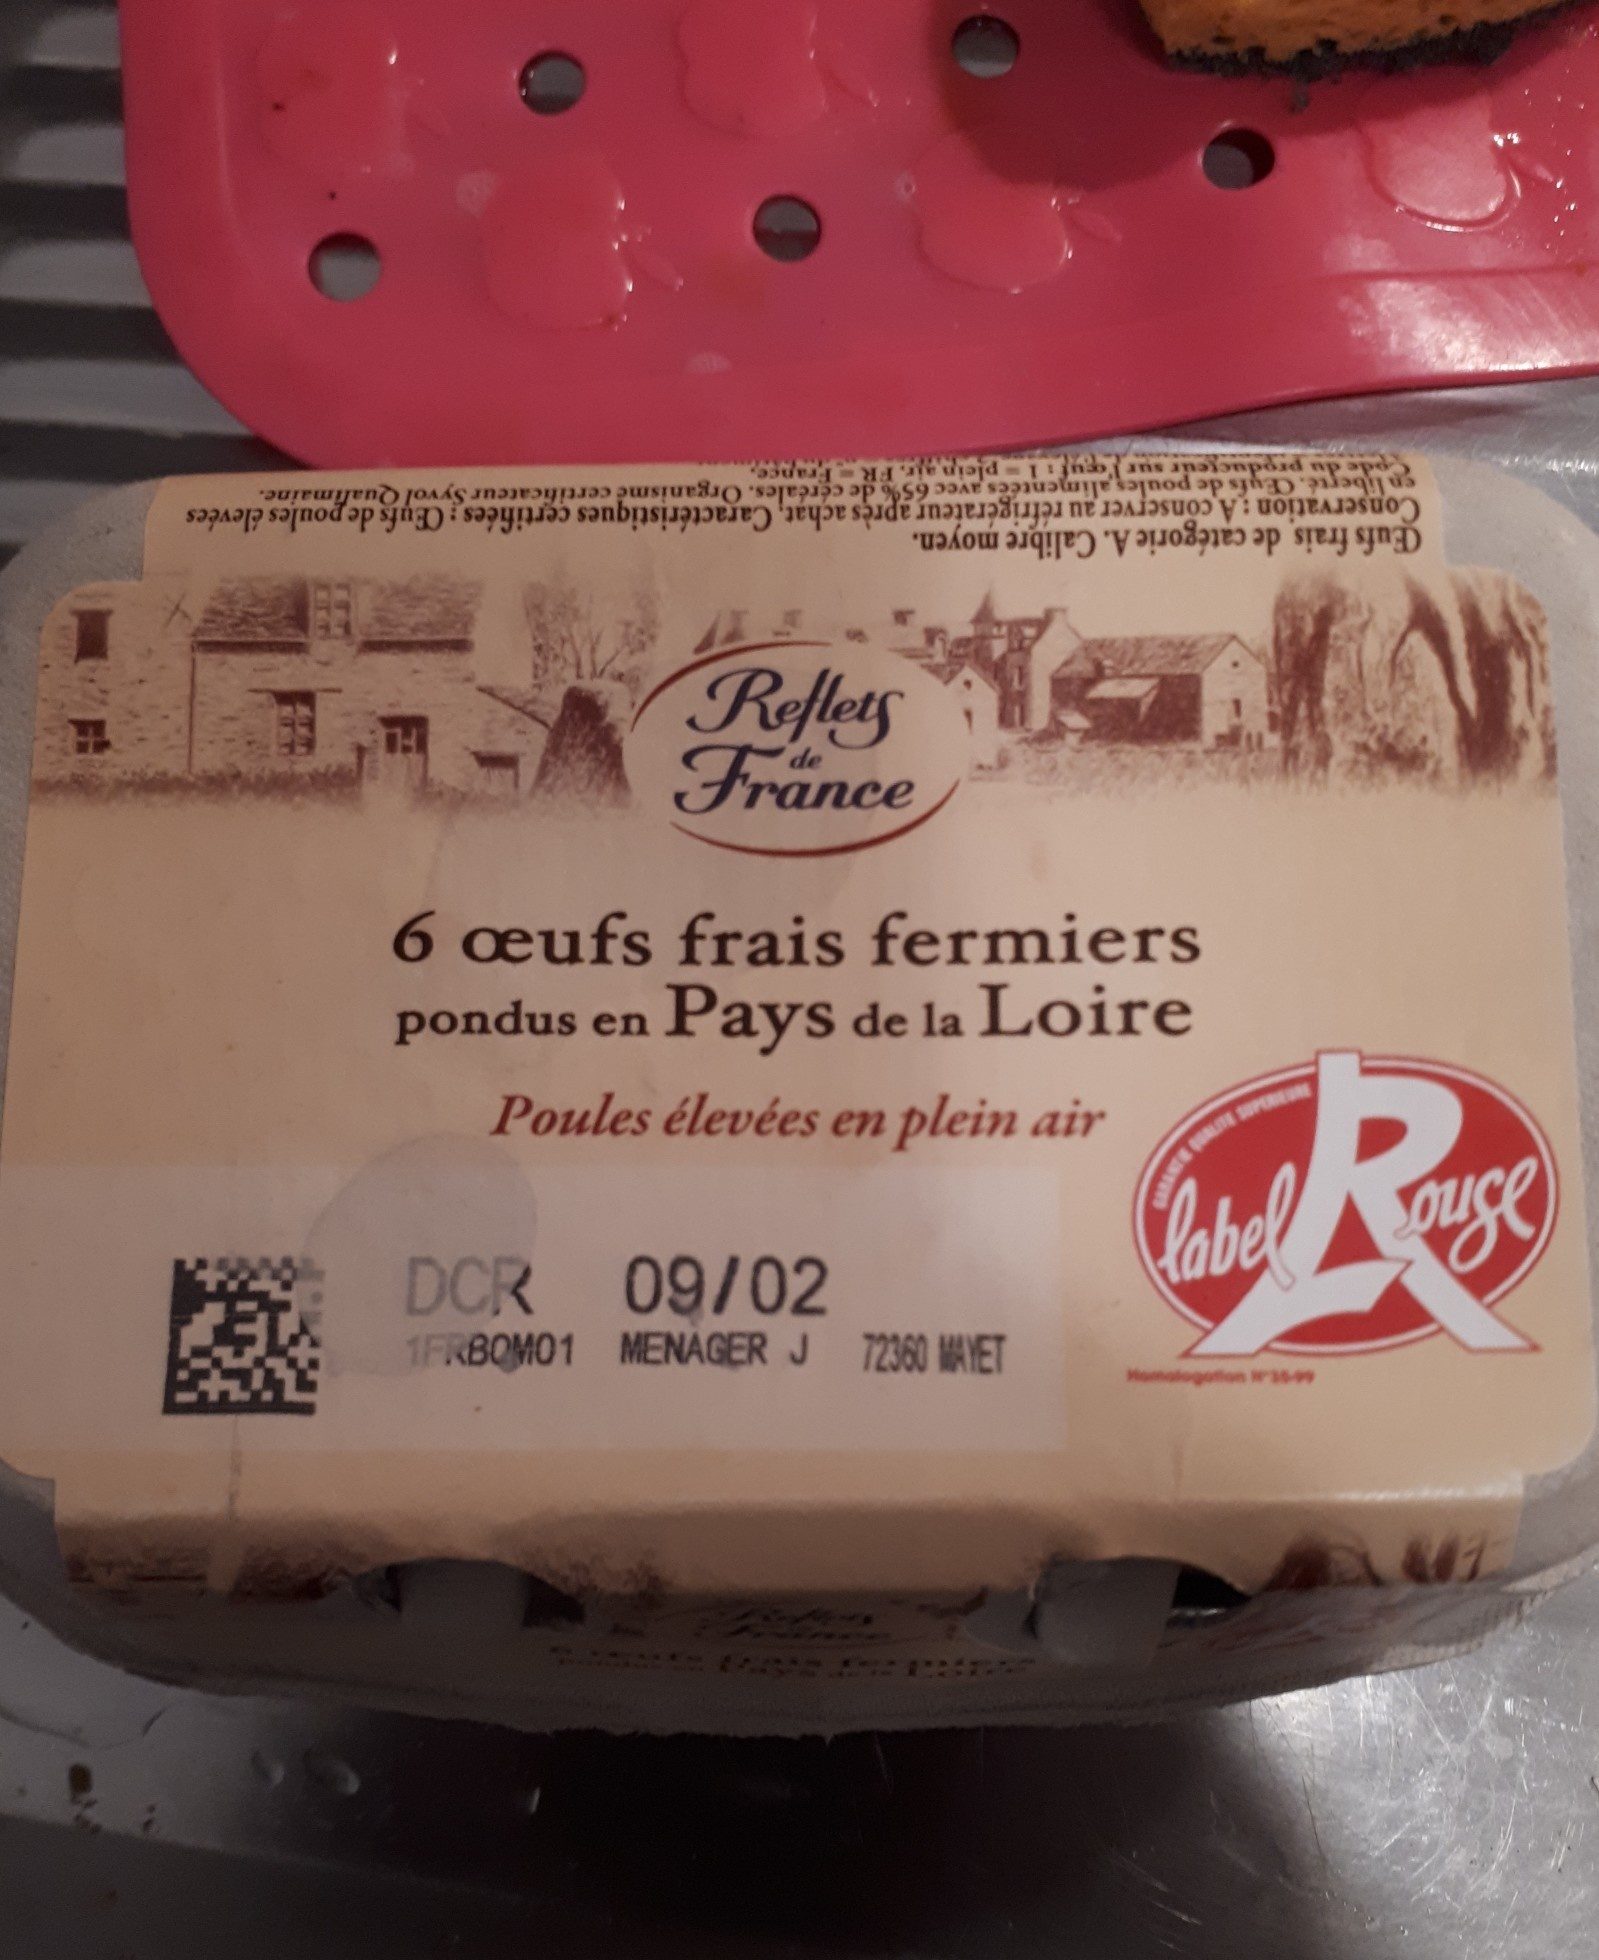 6 oeufs frais fermiers de poules élevées en plein air - Ingredientes - fr